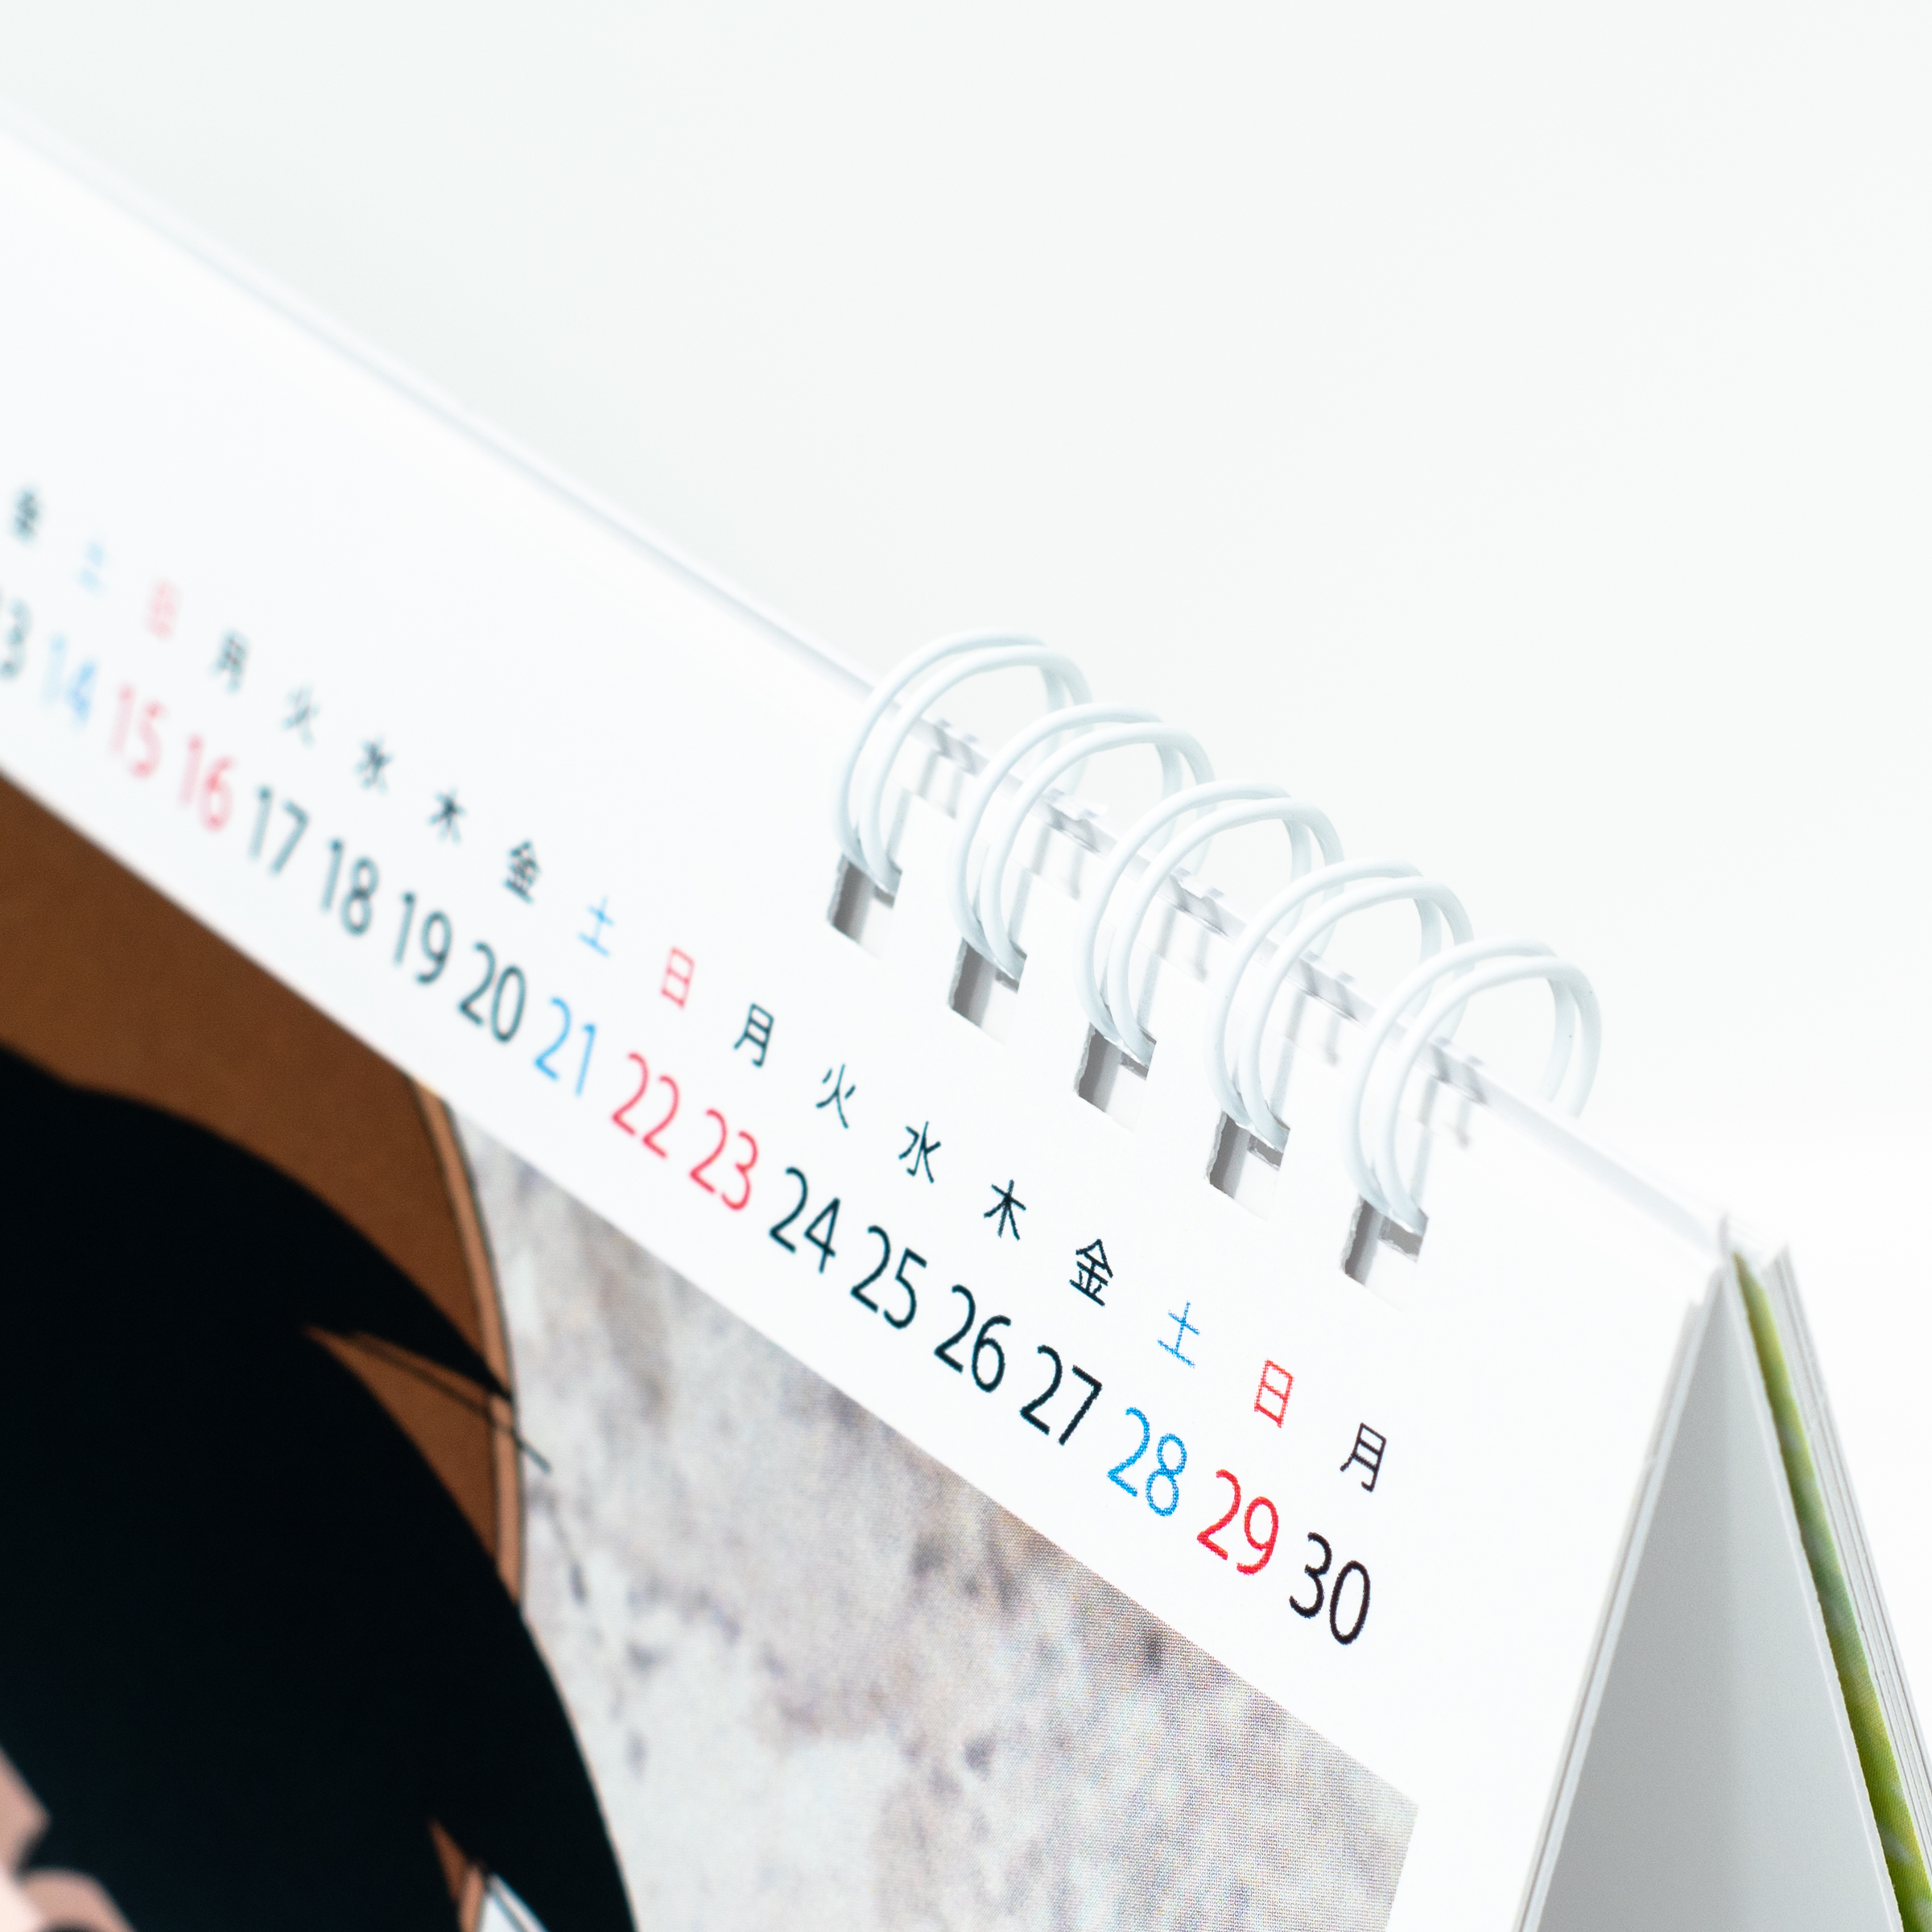 「合同会社エフドア 様」製作のオリジナルカレンダー ギャラリー写真3